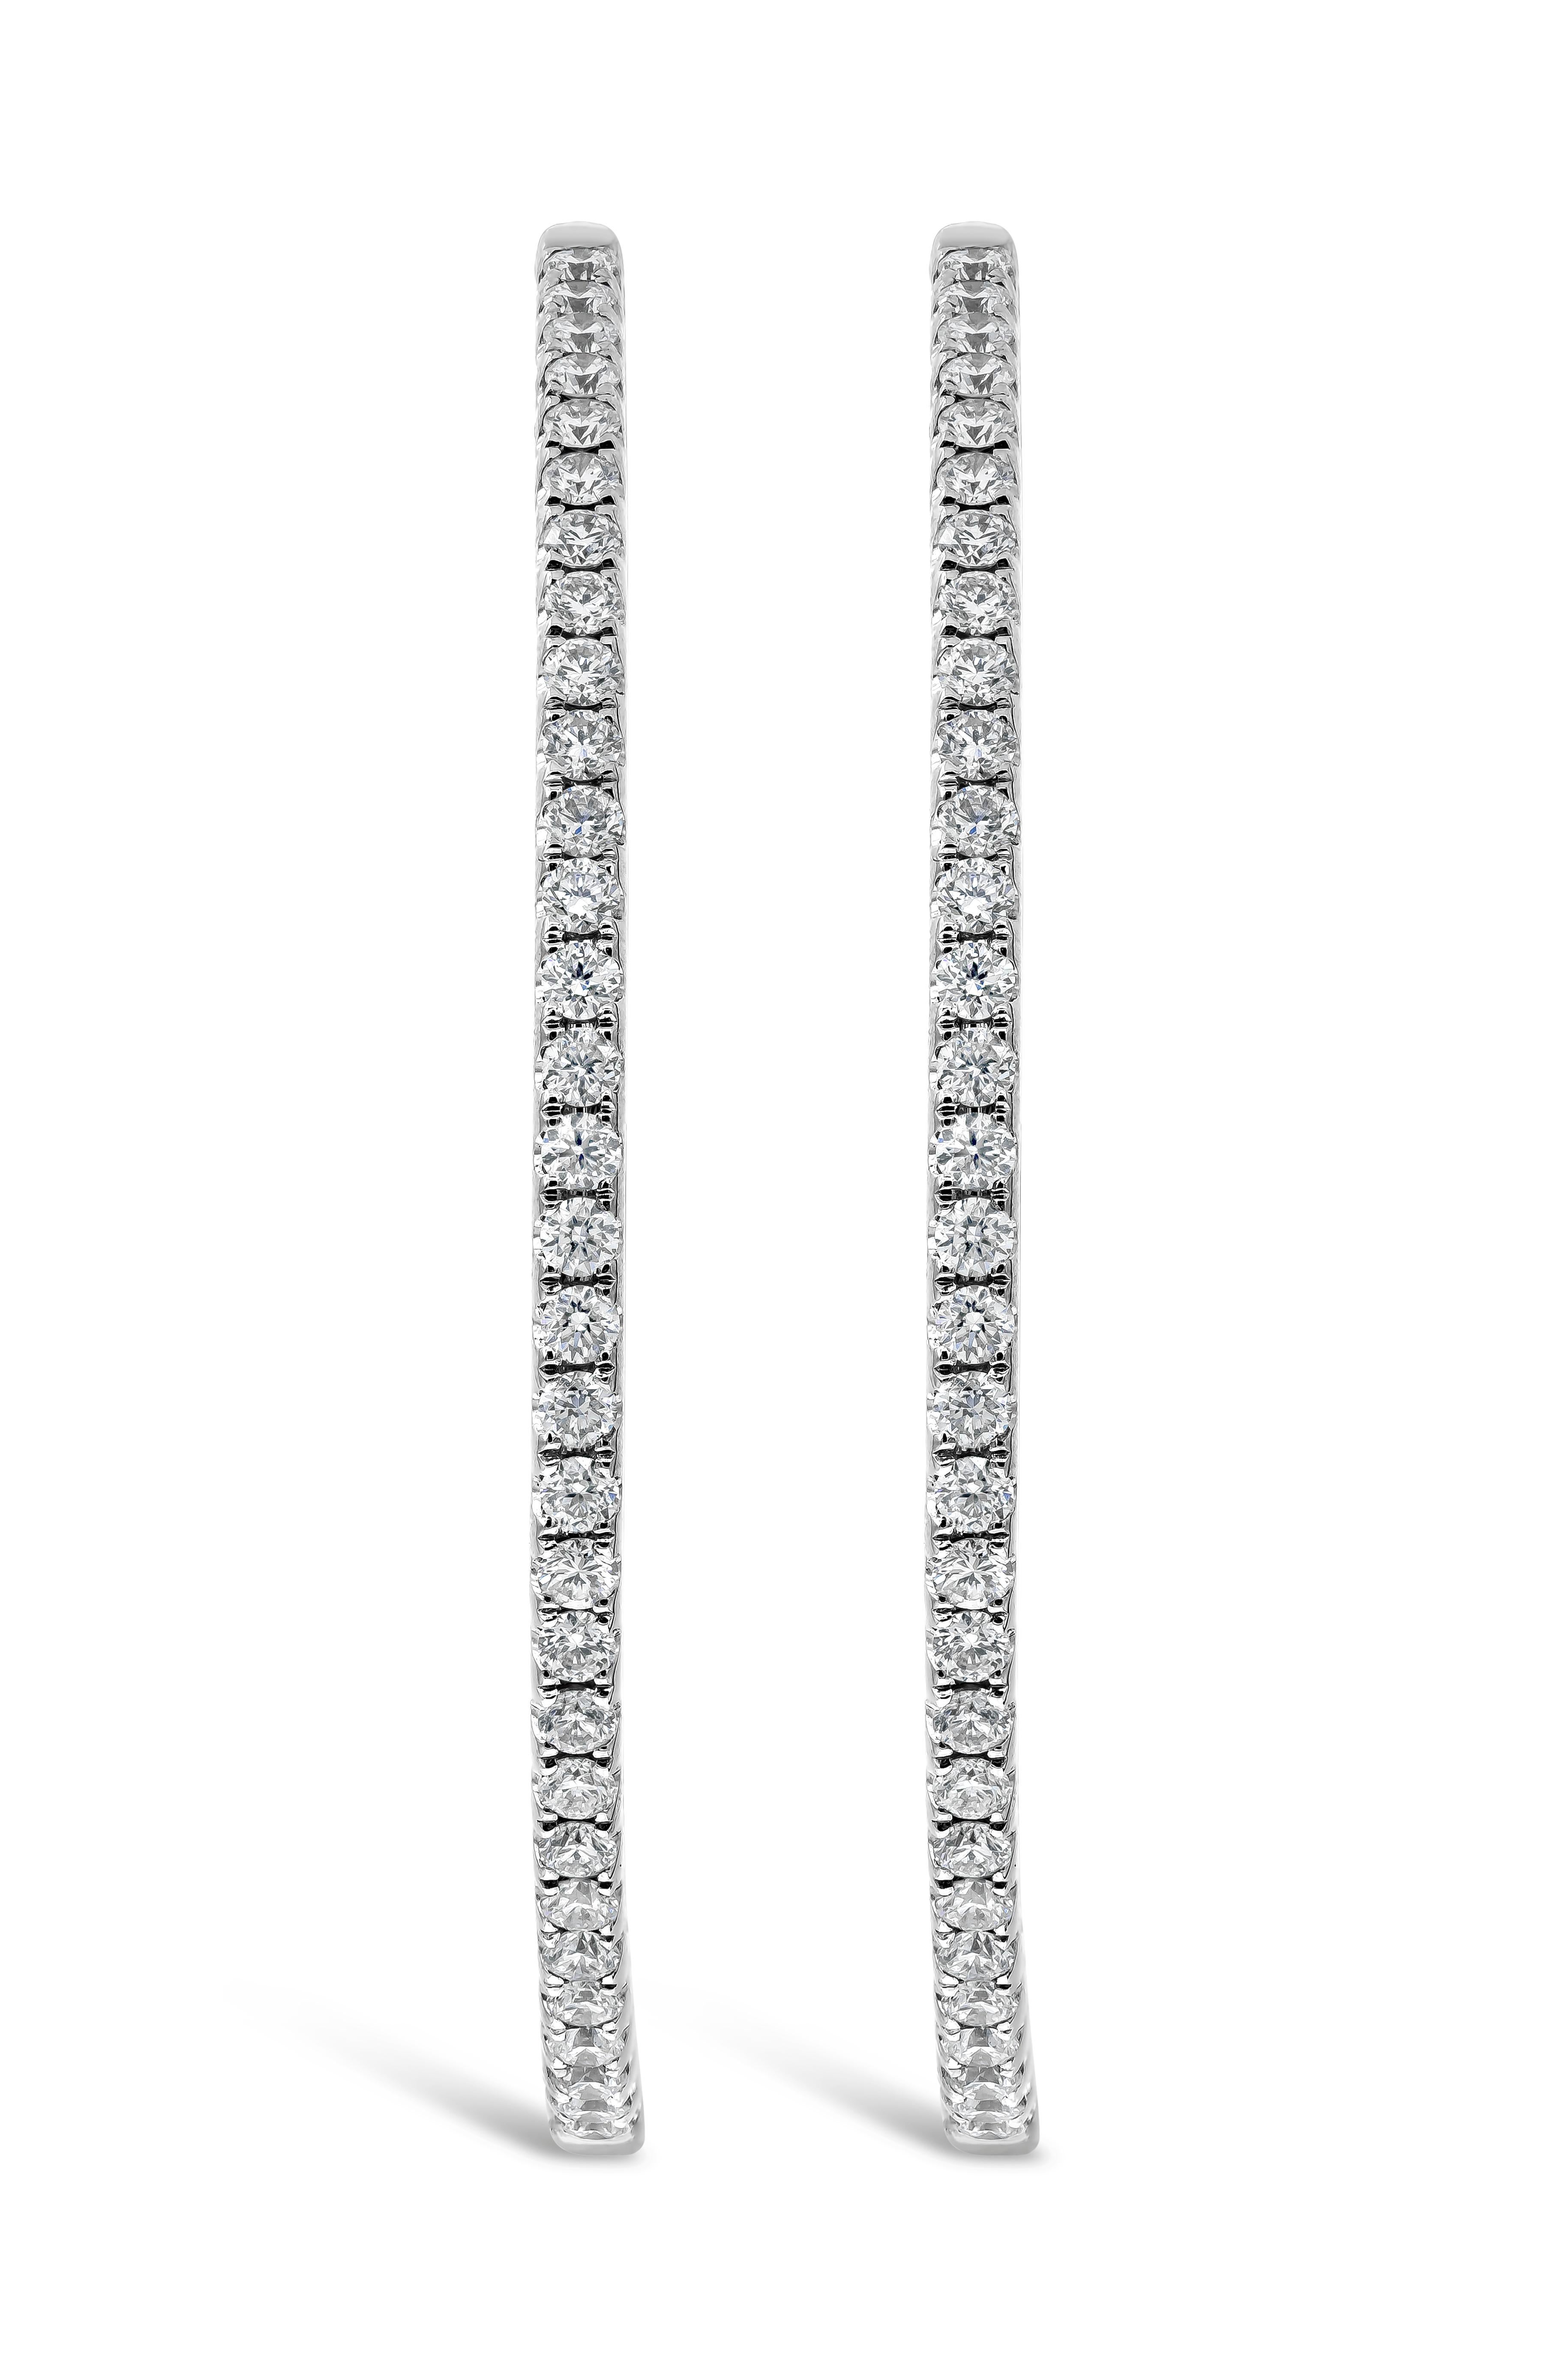 Un bijou intemporel, mettant en valeur une rangée de 110 diamants ronds de taille brillant pesant 1,52 carats au total, sertis dans un anneau classique en or blanc 18k. Les cerceaux mesurent 1,50 pouce de diamètre.

Roman Malakov est une maison sur